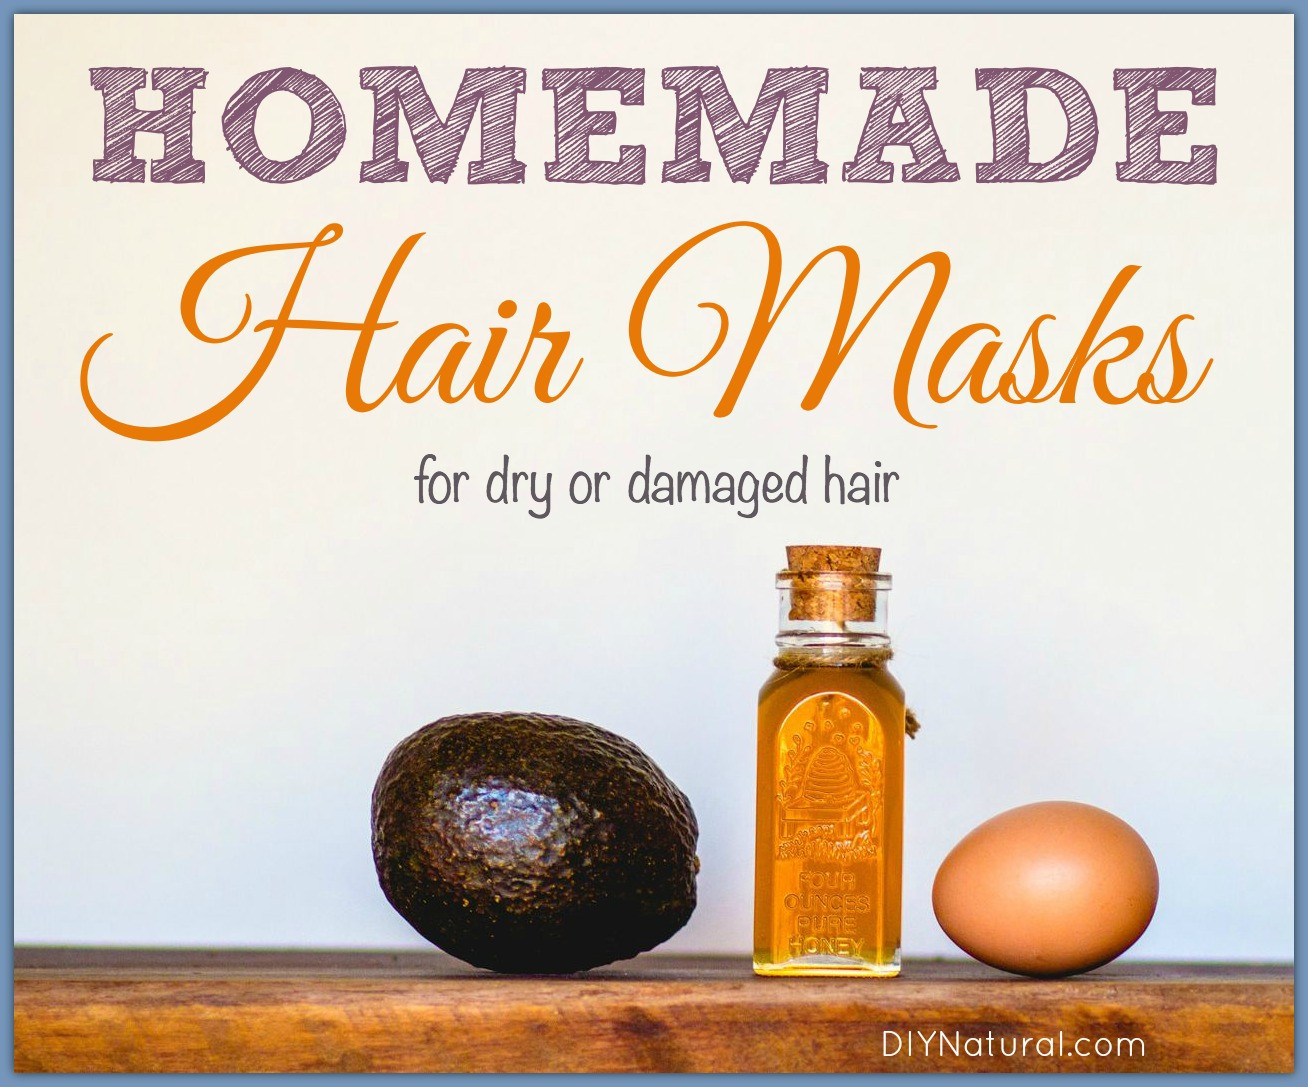 DIY Hair Masks For Dry Damaged Hair
 Homemade Hair Masks for Dry or Damaged Hair